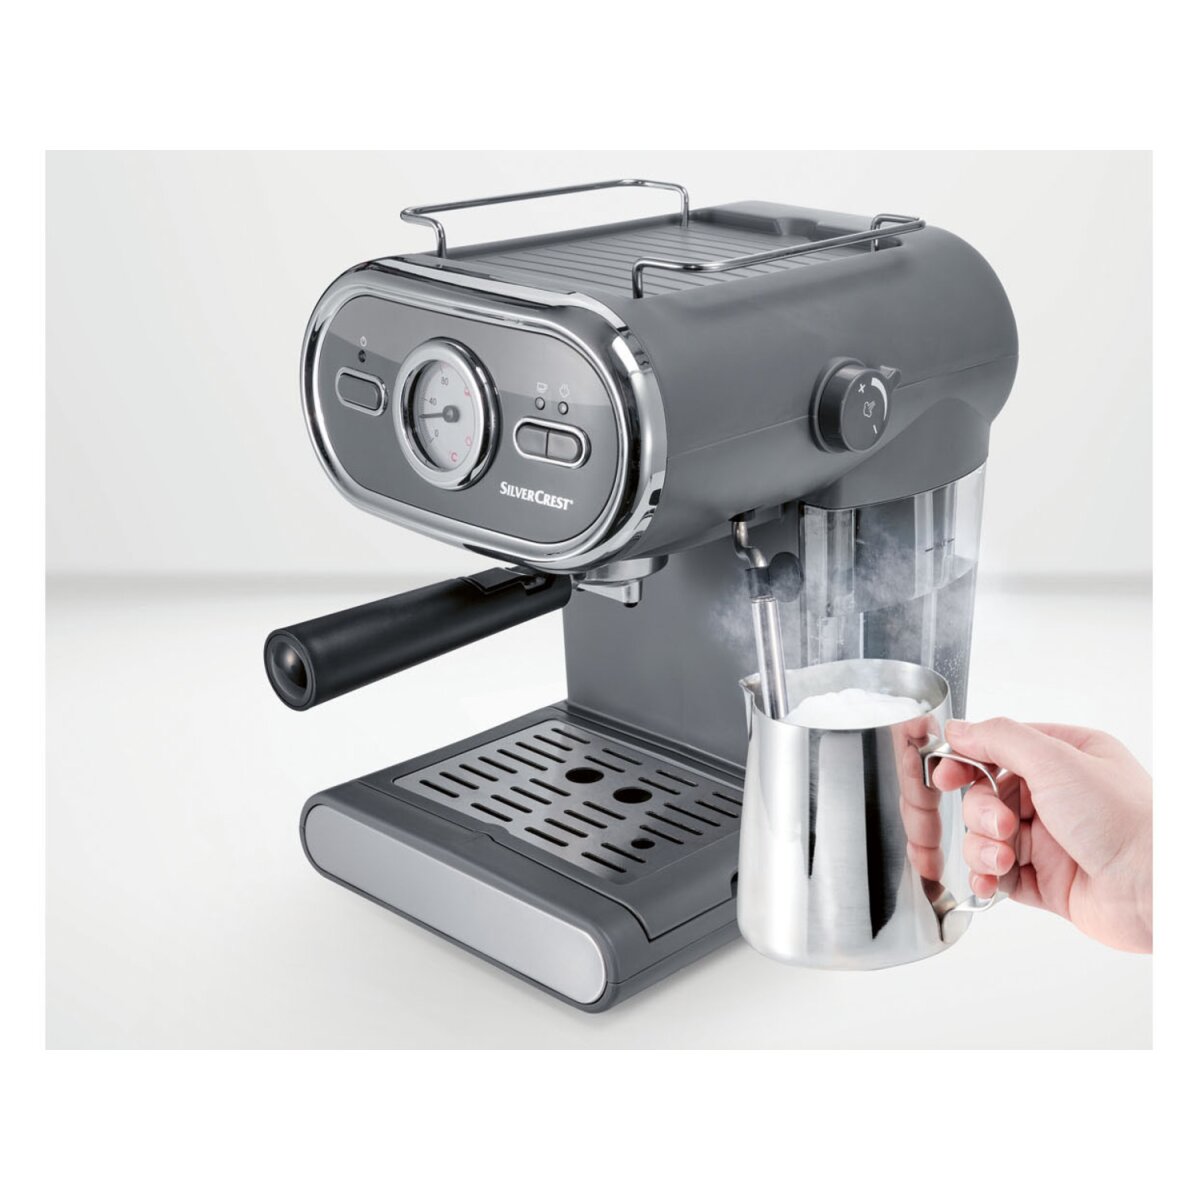 SILVERCREST® KITCHEN TOOLS Espressomaschine/Siebträger Pastell anthrazit SEM  1100 D3 - B-Ware neuwer, 49,99 €